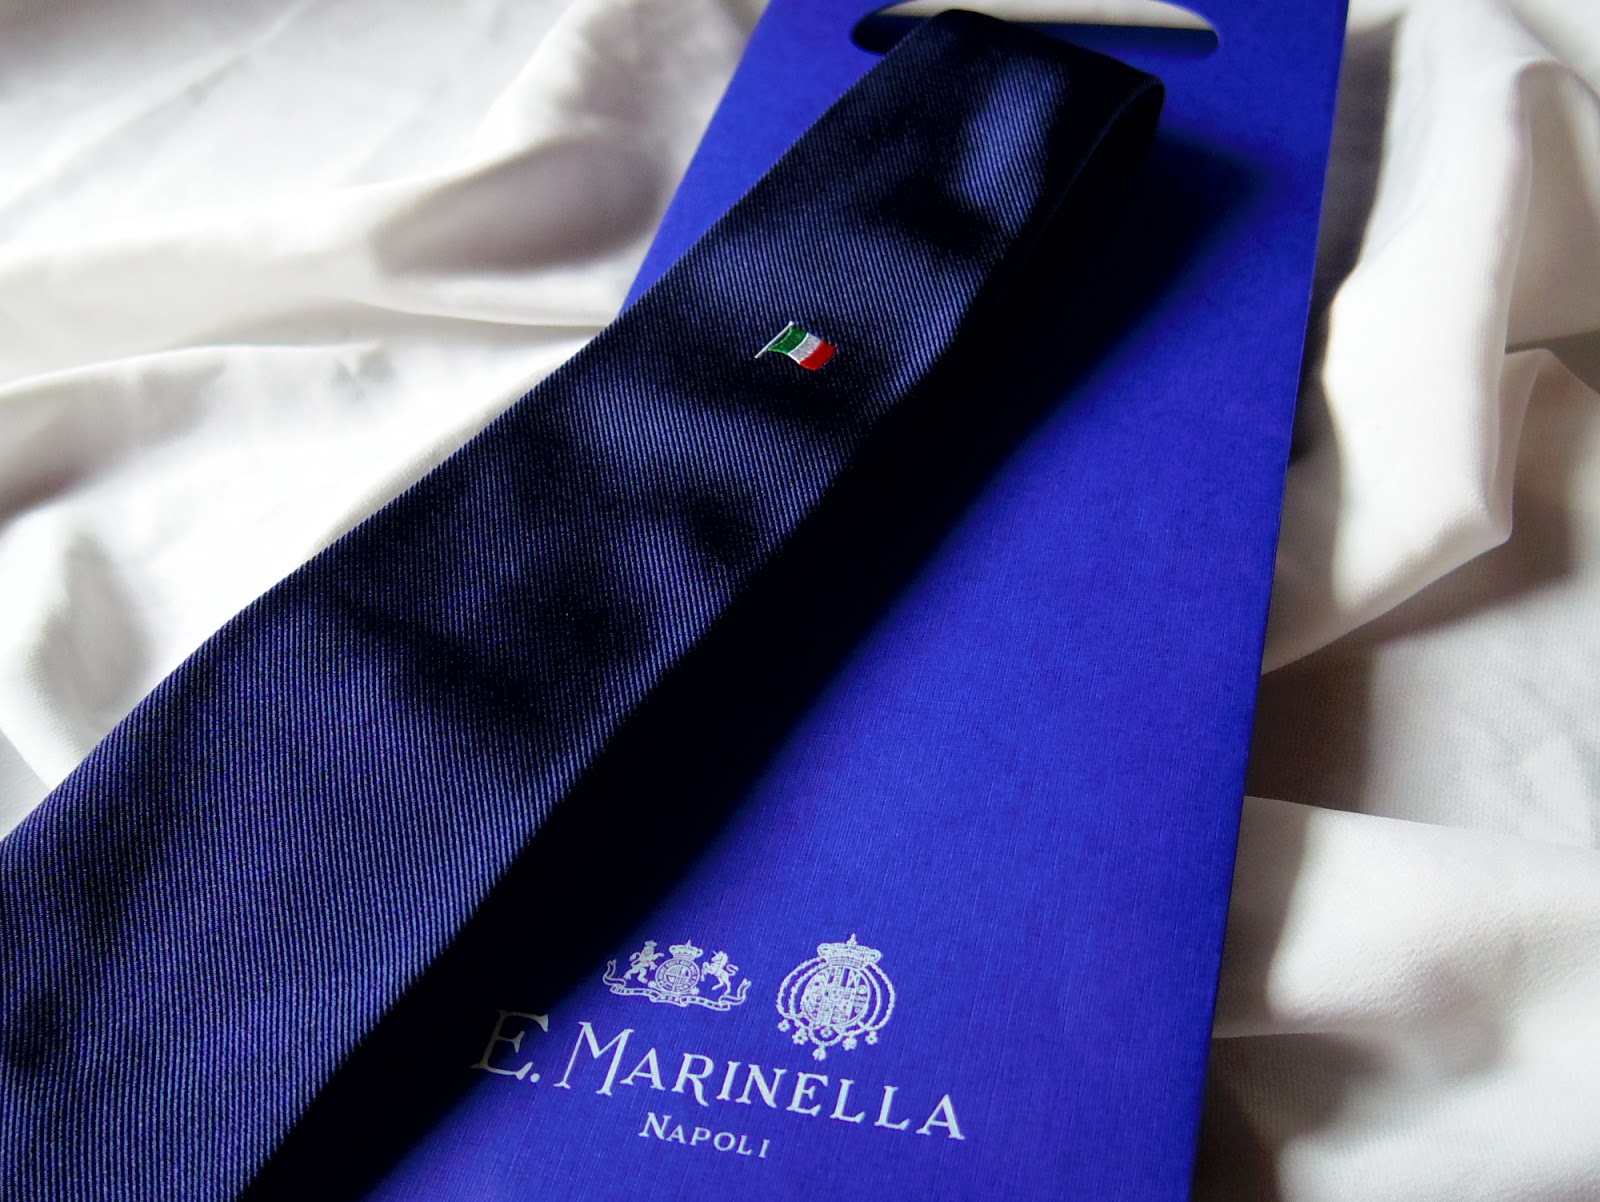 マリネッラのイタリア国旗ネクタイを購入しました